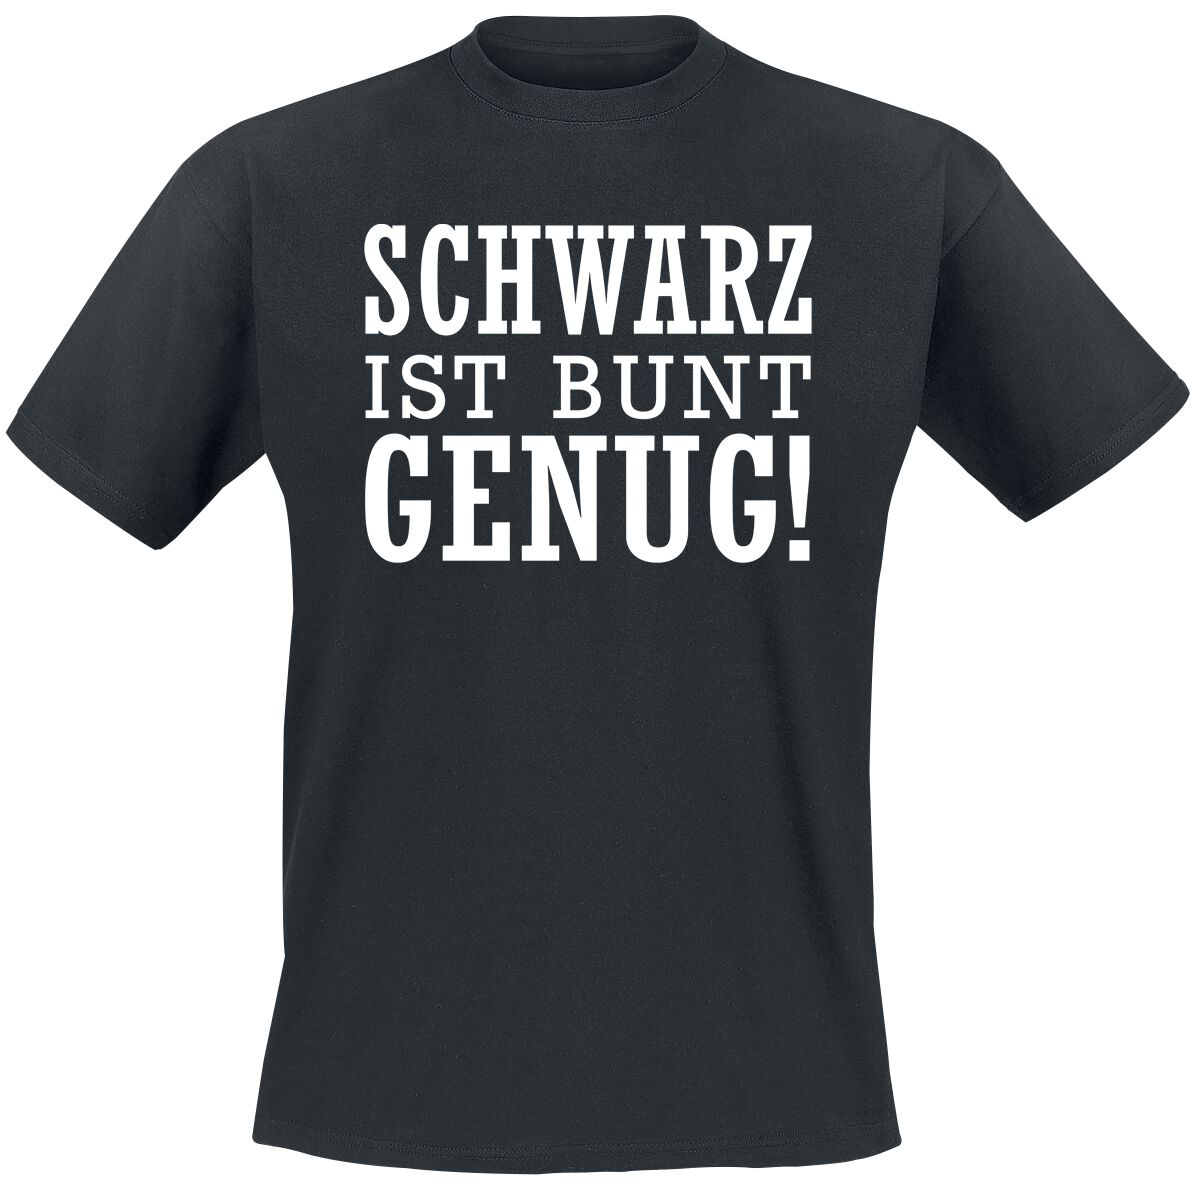 Sprüche Funshirt - Sprüche - Schwarz ist bunt genug T-Shirt schwarz